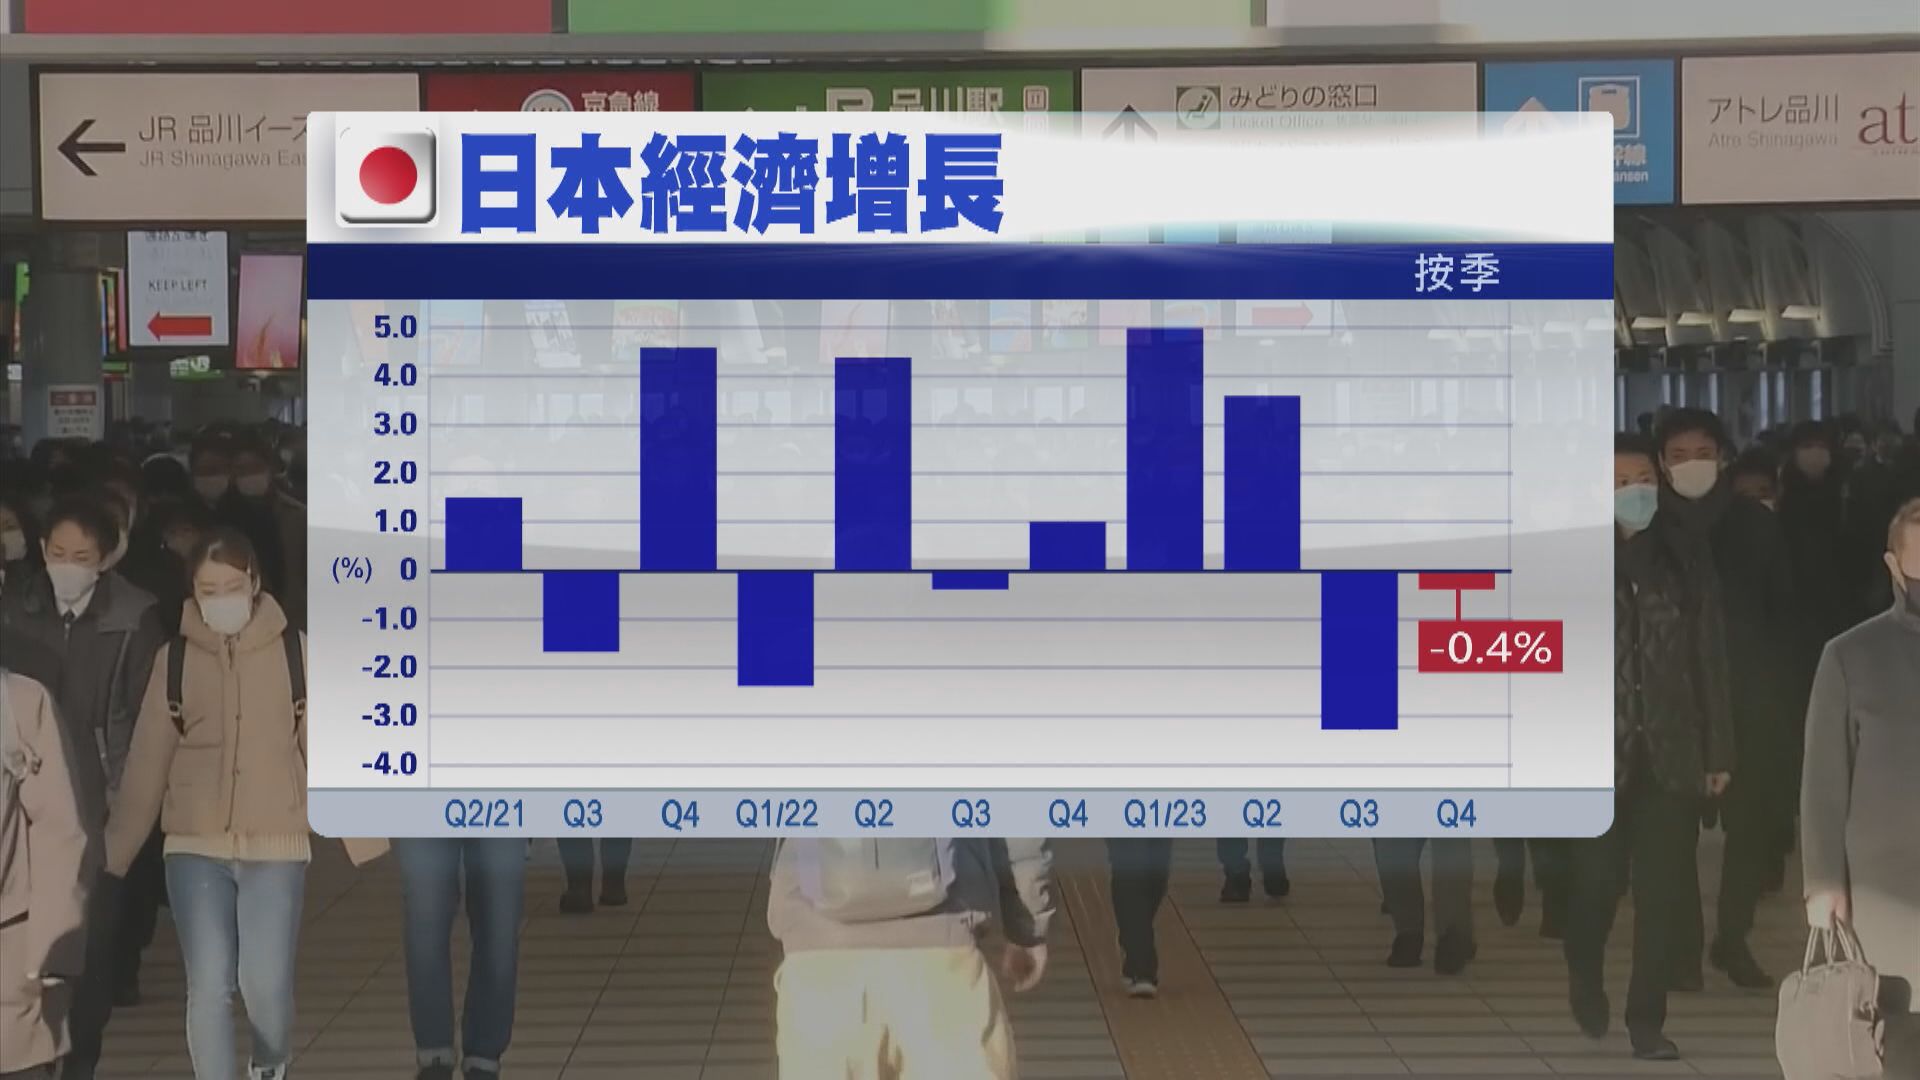 【下月難加息】日本經濟爆冷陷技術性衰退 痛失第3大經濟體地位